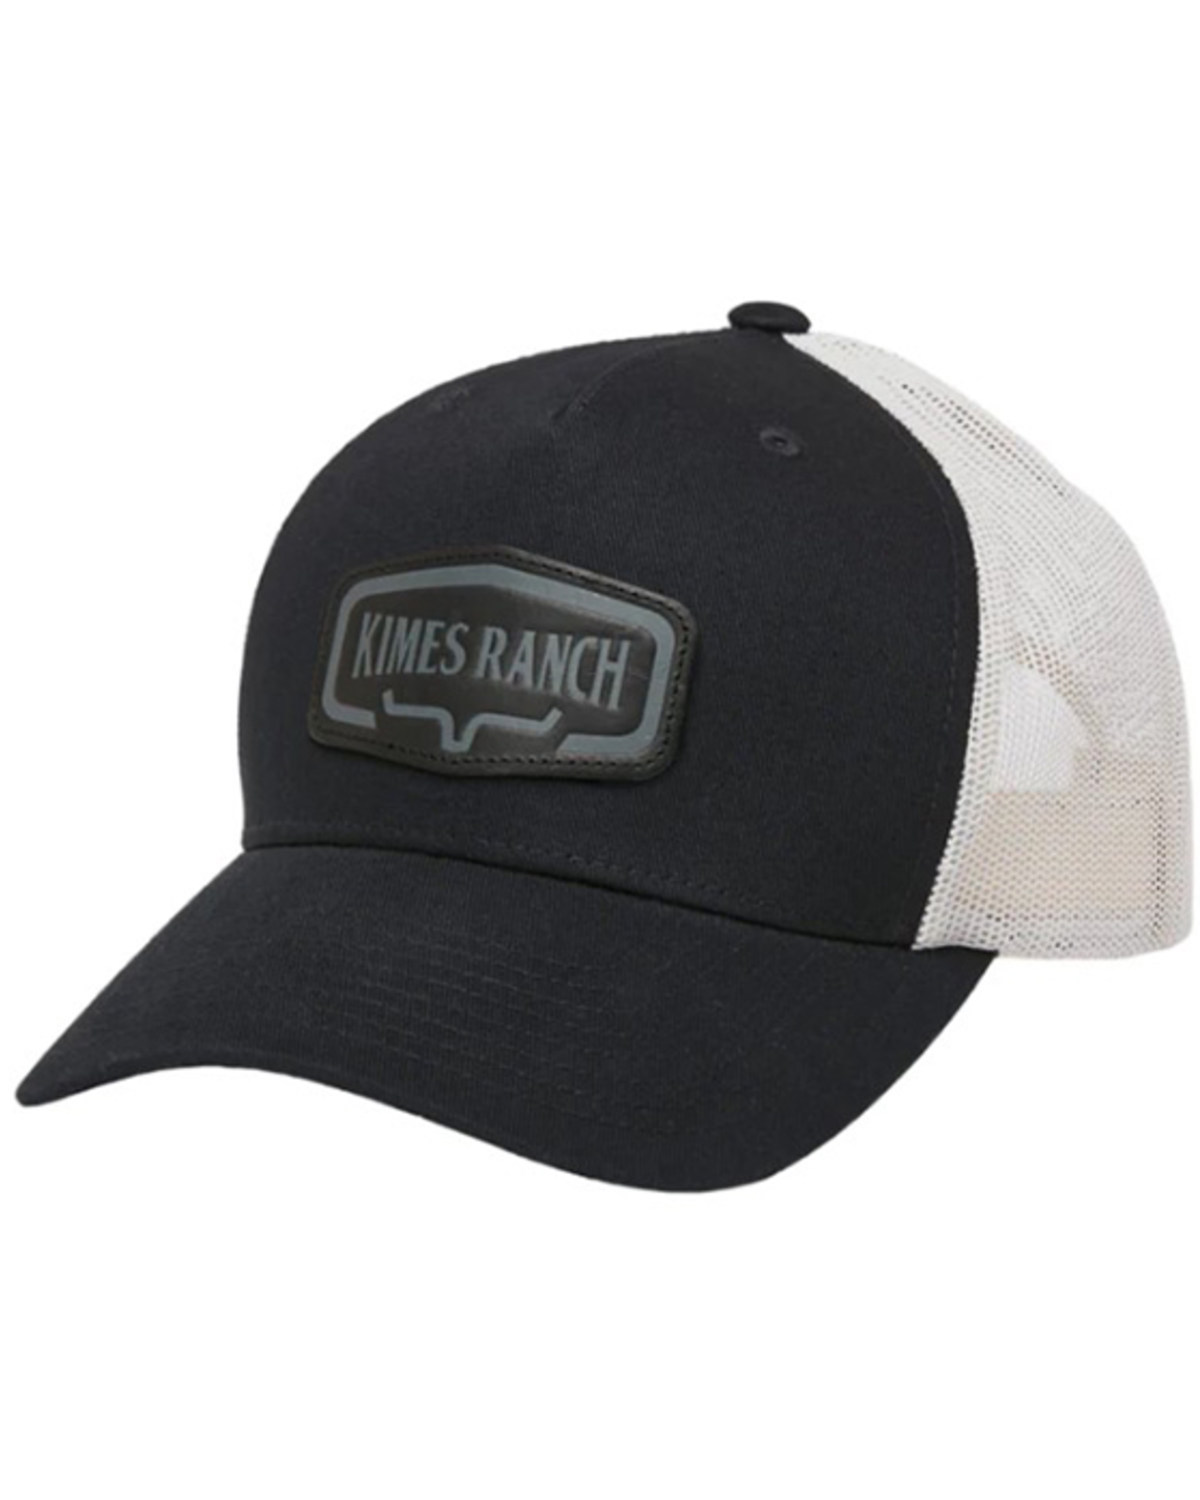 Kimes Ranch Men's Dodson Premier Black Baseball Cap